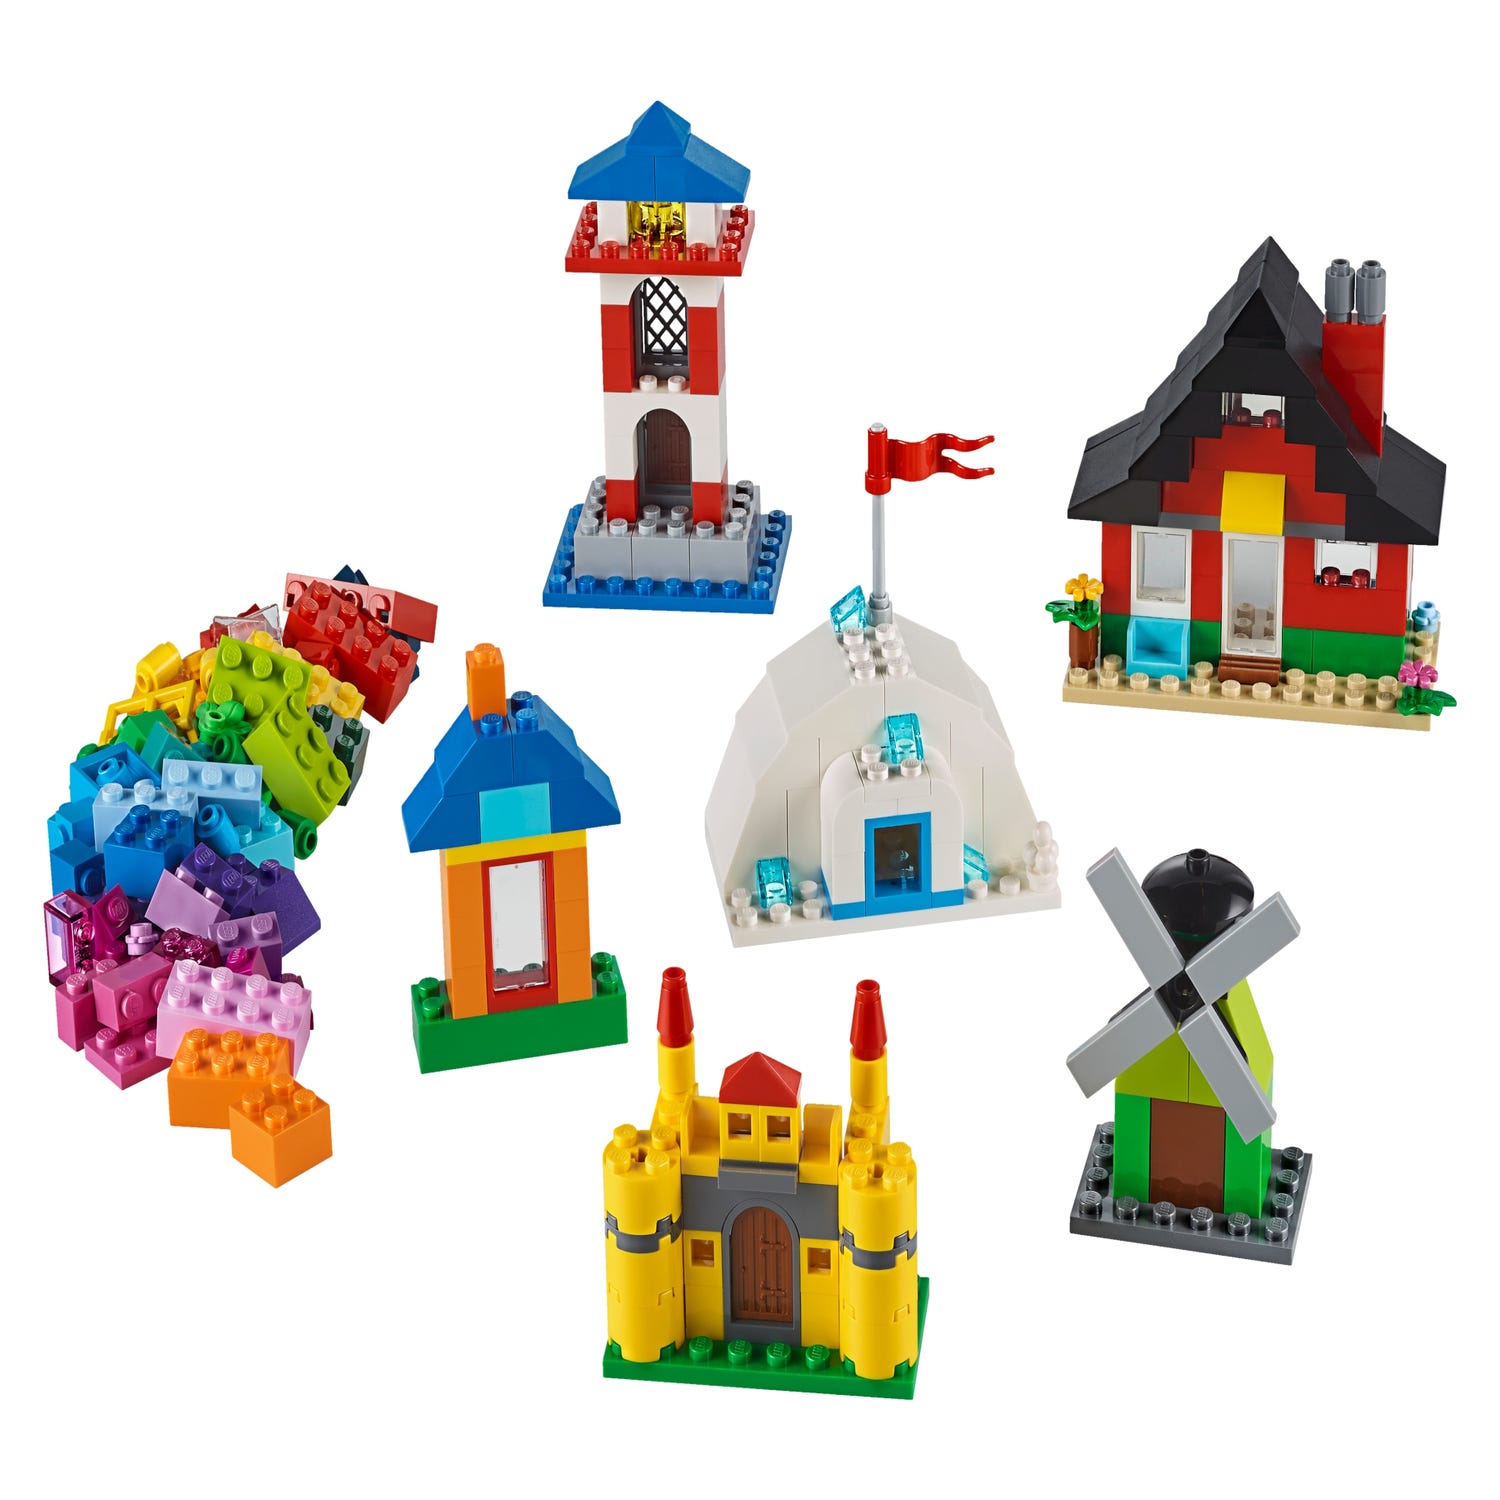 LEGO® 11008 Classic Briques et Maisons, Set de Construction, Jeu